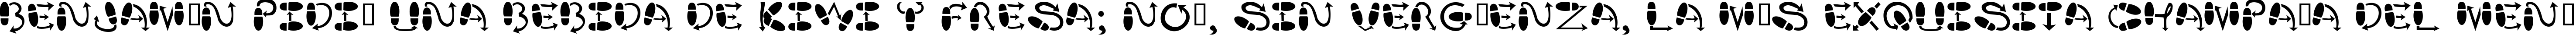 Пример написания шрифтом DanceStep текста на испанском